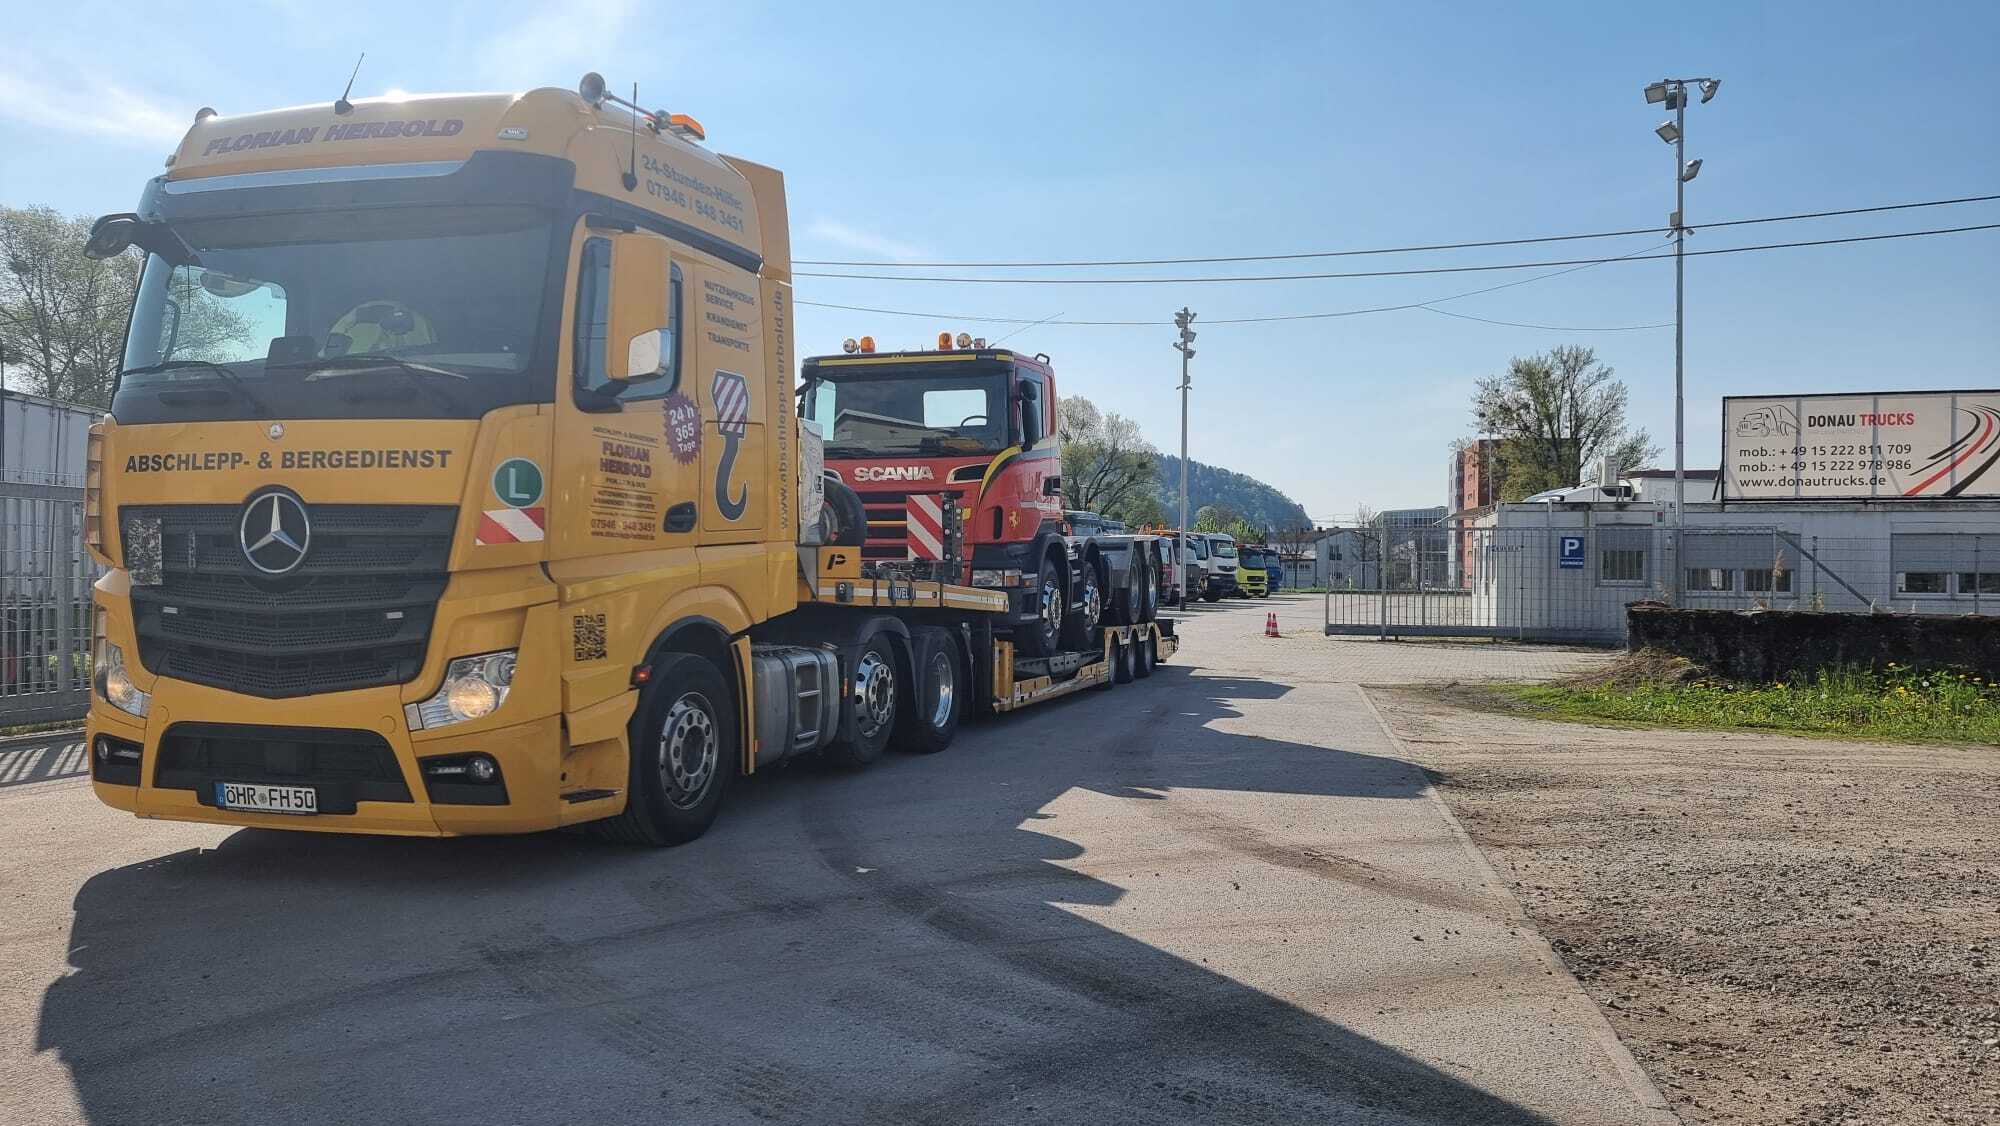 Donau Trucks GmbH undefined: صور 4